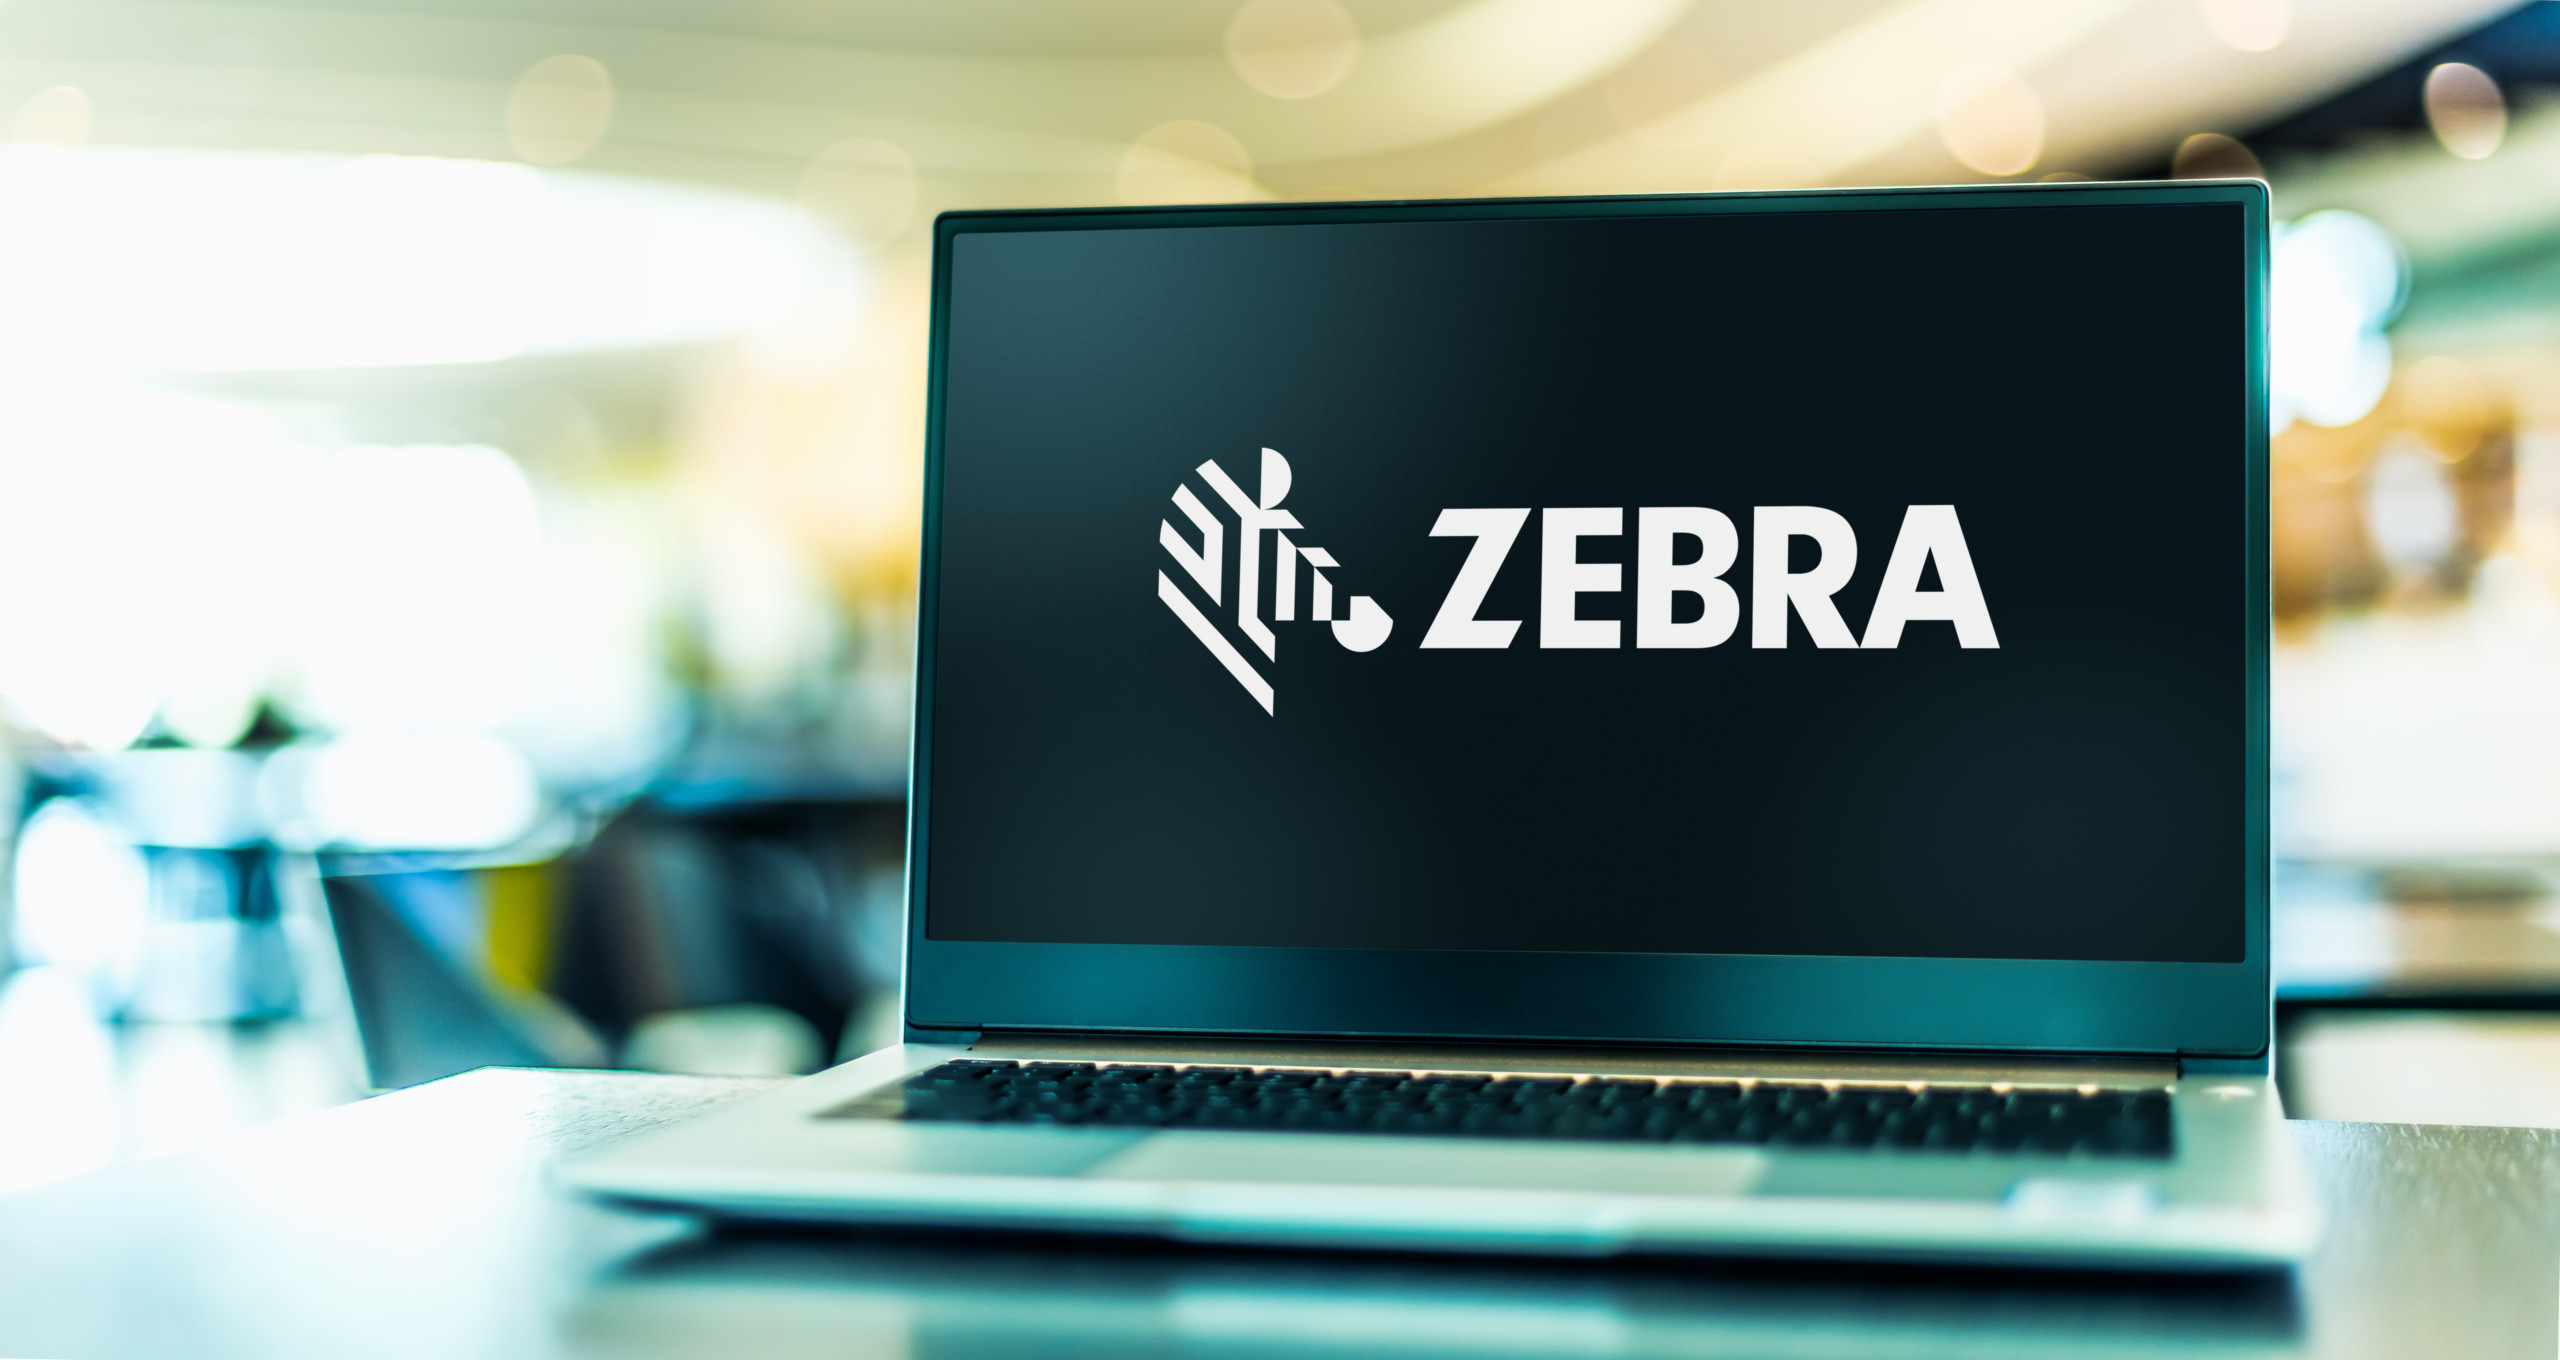 Zebra Technologies übertrifft die Erwartungen – Der Aktienkurs bricht ein